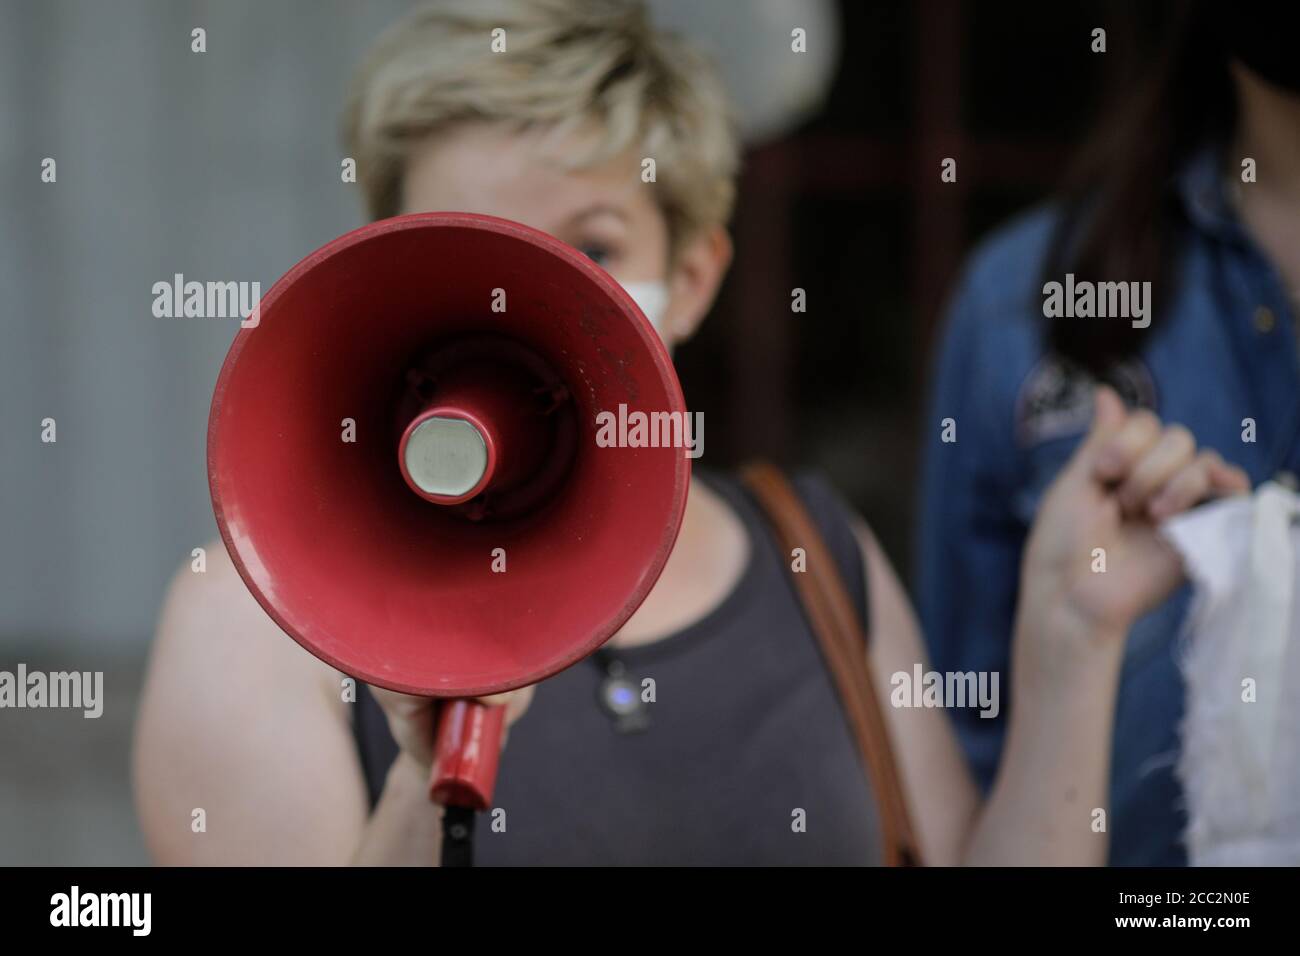 Details mit einem Bullhorn, das von einer Frau während einer politischen/sozialen Kundgebung gehalten wird. Stockfoto